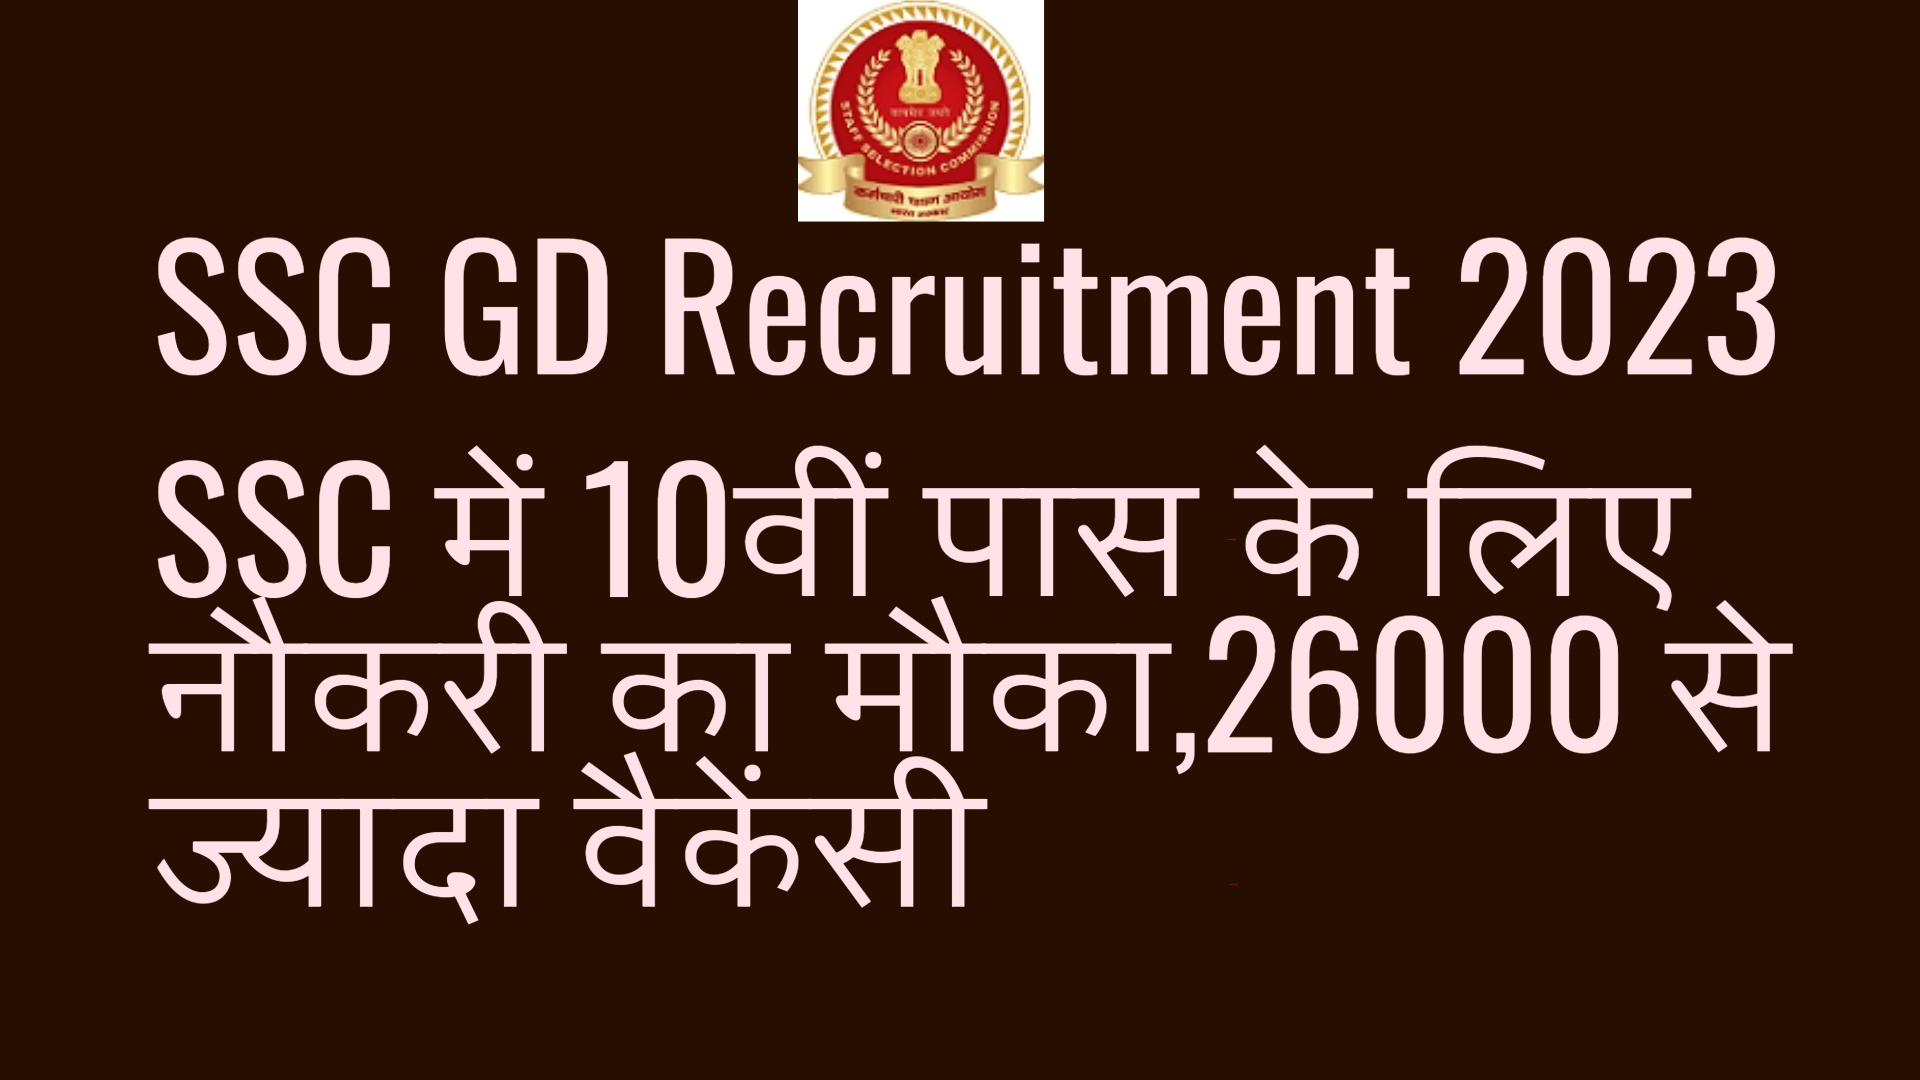 SSC GD Recruitment 2023